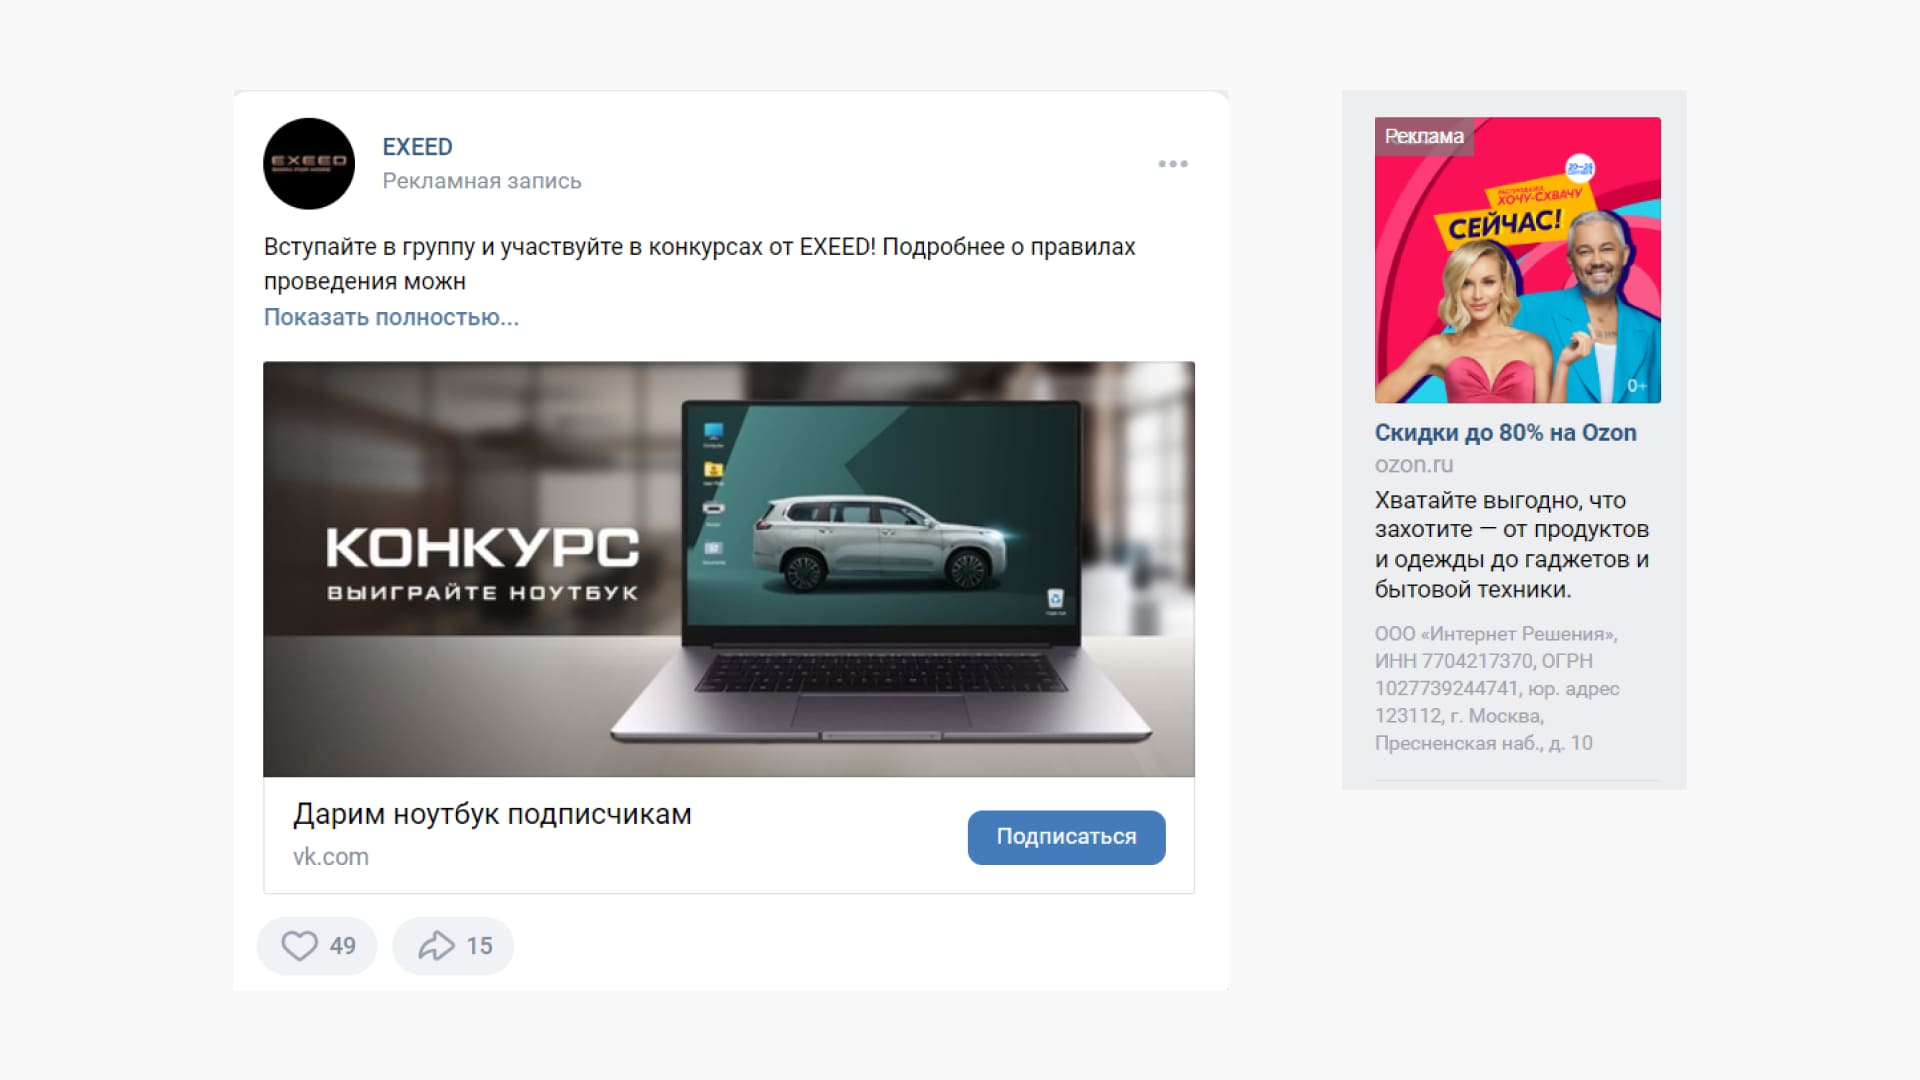 Пример рекламы во ВКонтакте: запись в ленте и баннер